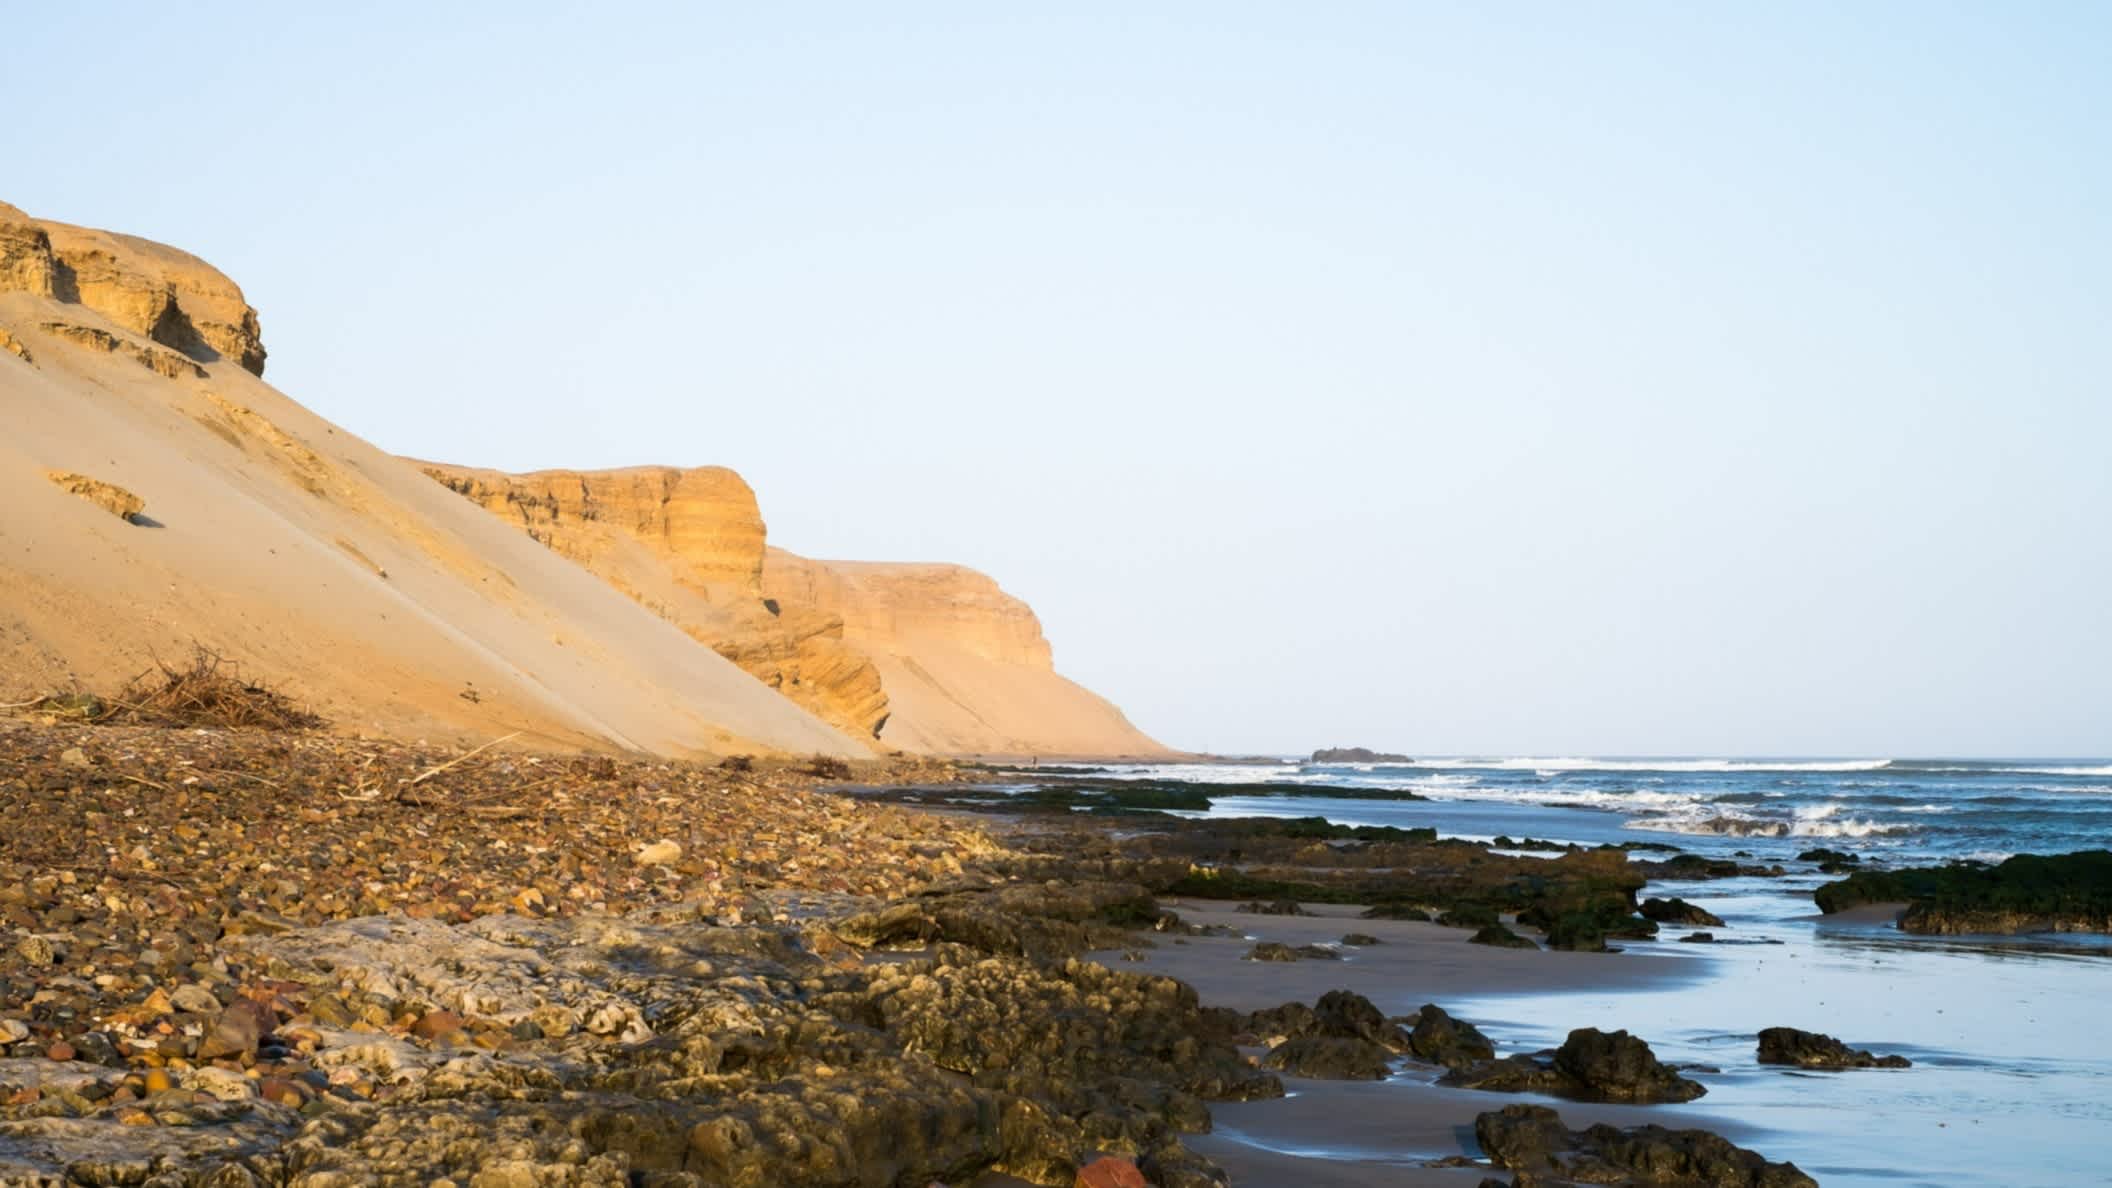 Blick auf den naturbelassenen wilden Strand mit Kieselsteinen am Strand und Sandbergen entlang der Küste sowie welligem Wasser.